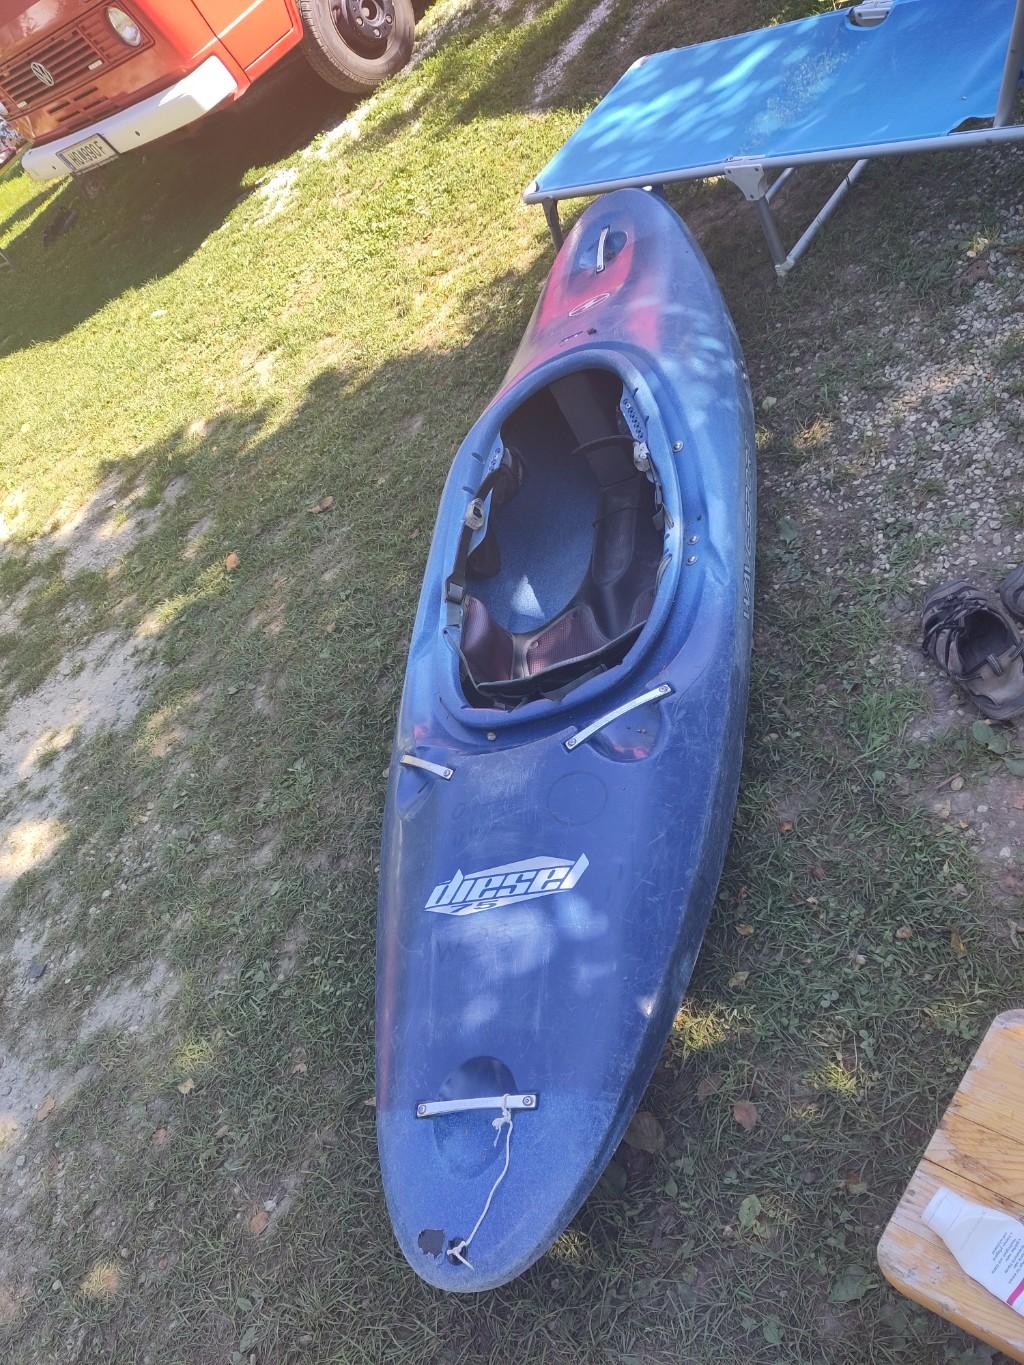 blue "Diesel 75" kayak on the gras